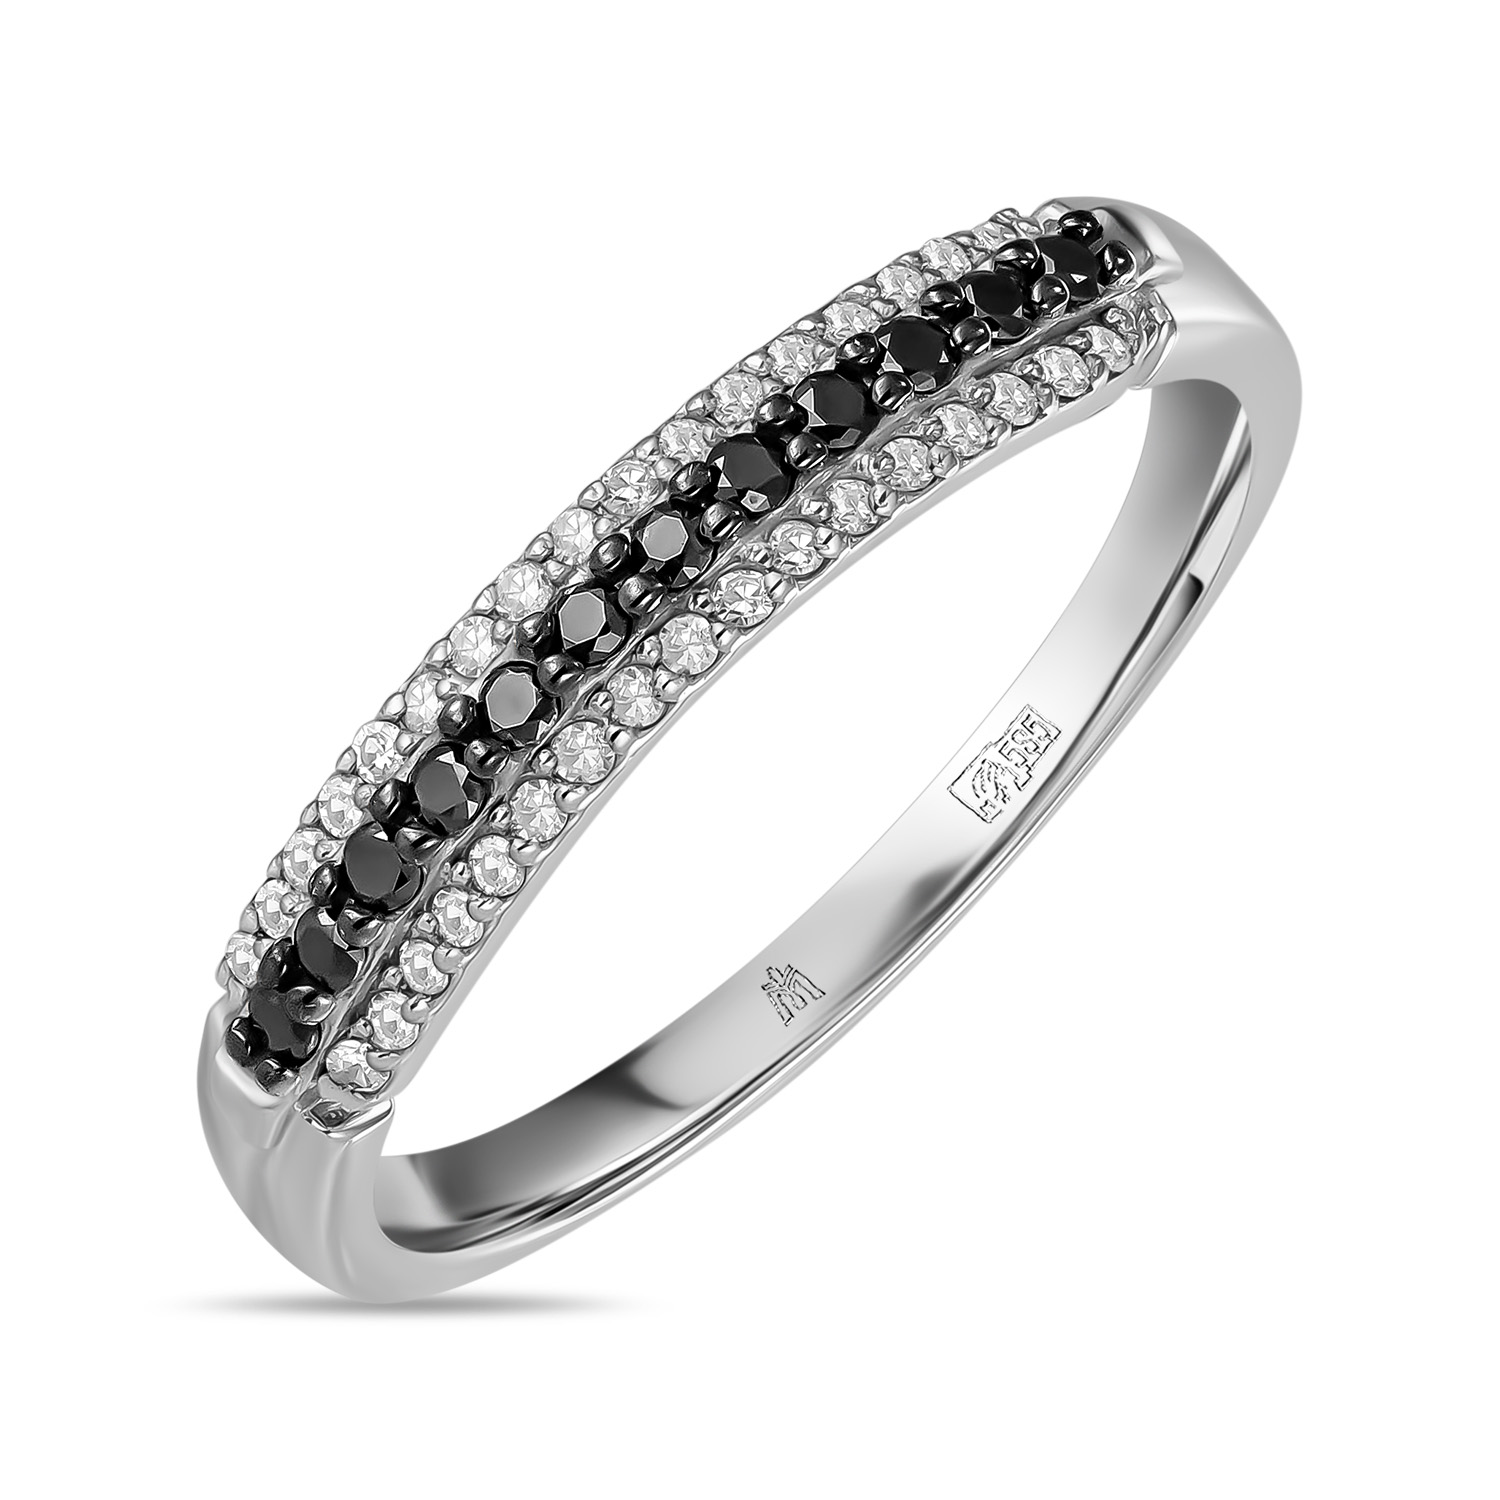 Кольца МЮЗ Кольцо с бриллиантами и облагороженными бриллиантами кольца мюз кольцо с бриллиантами и облагороженными бриллиантами